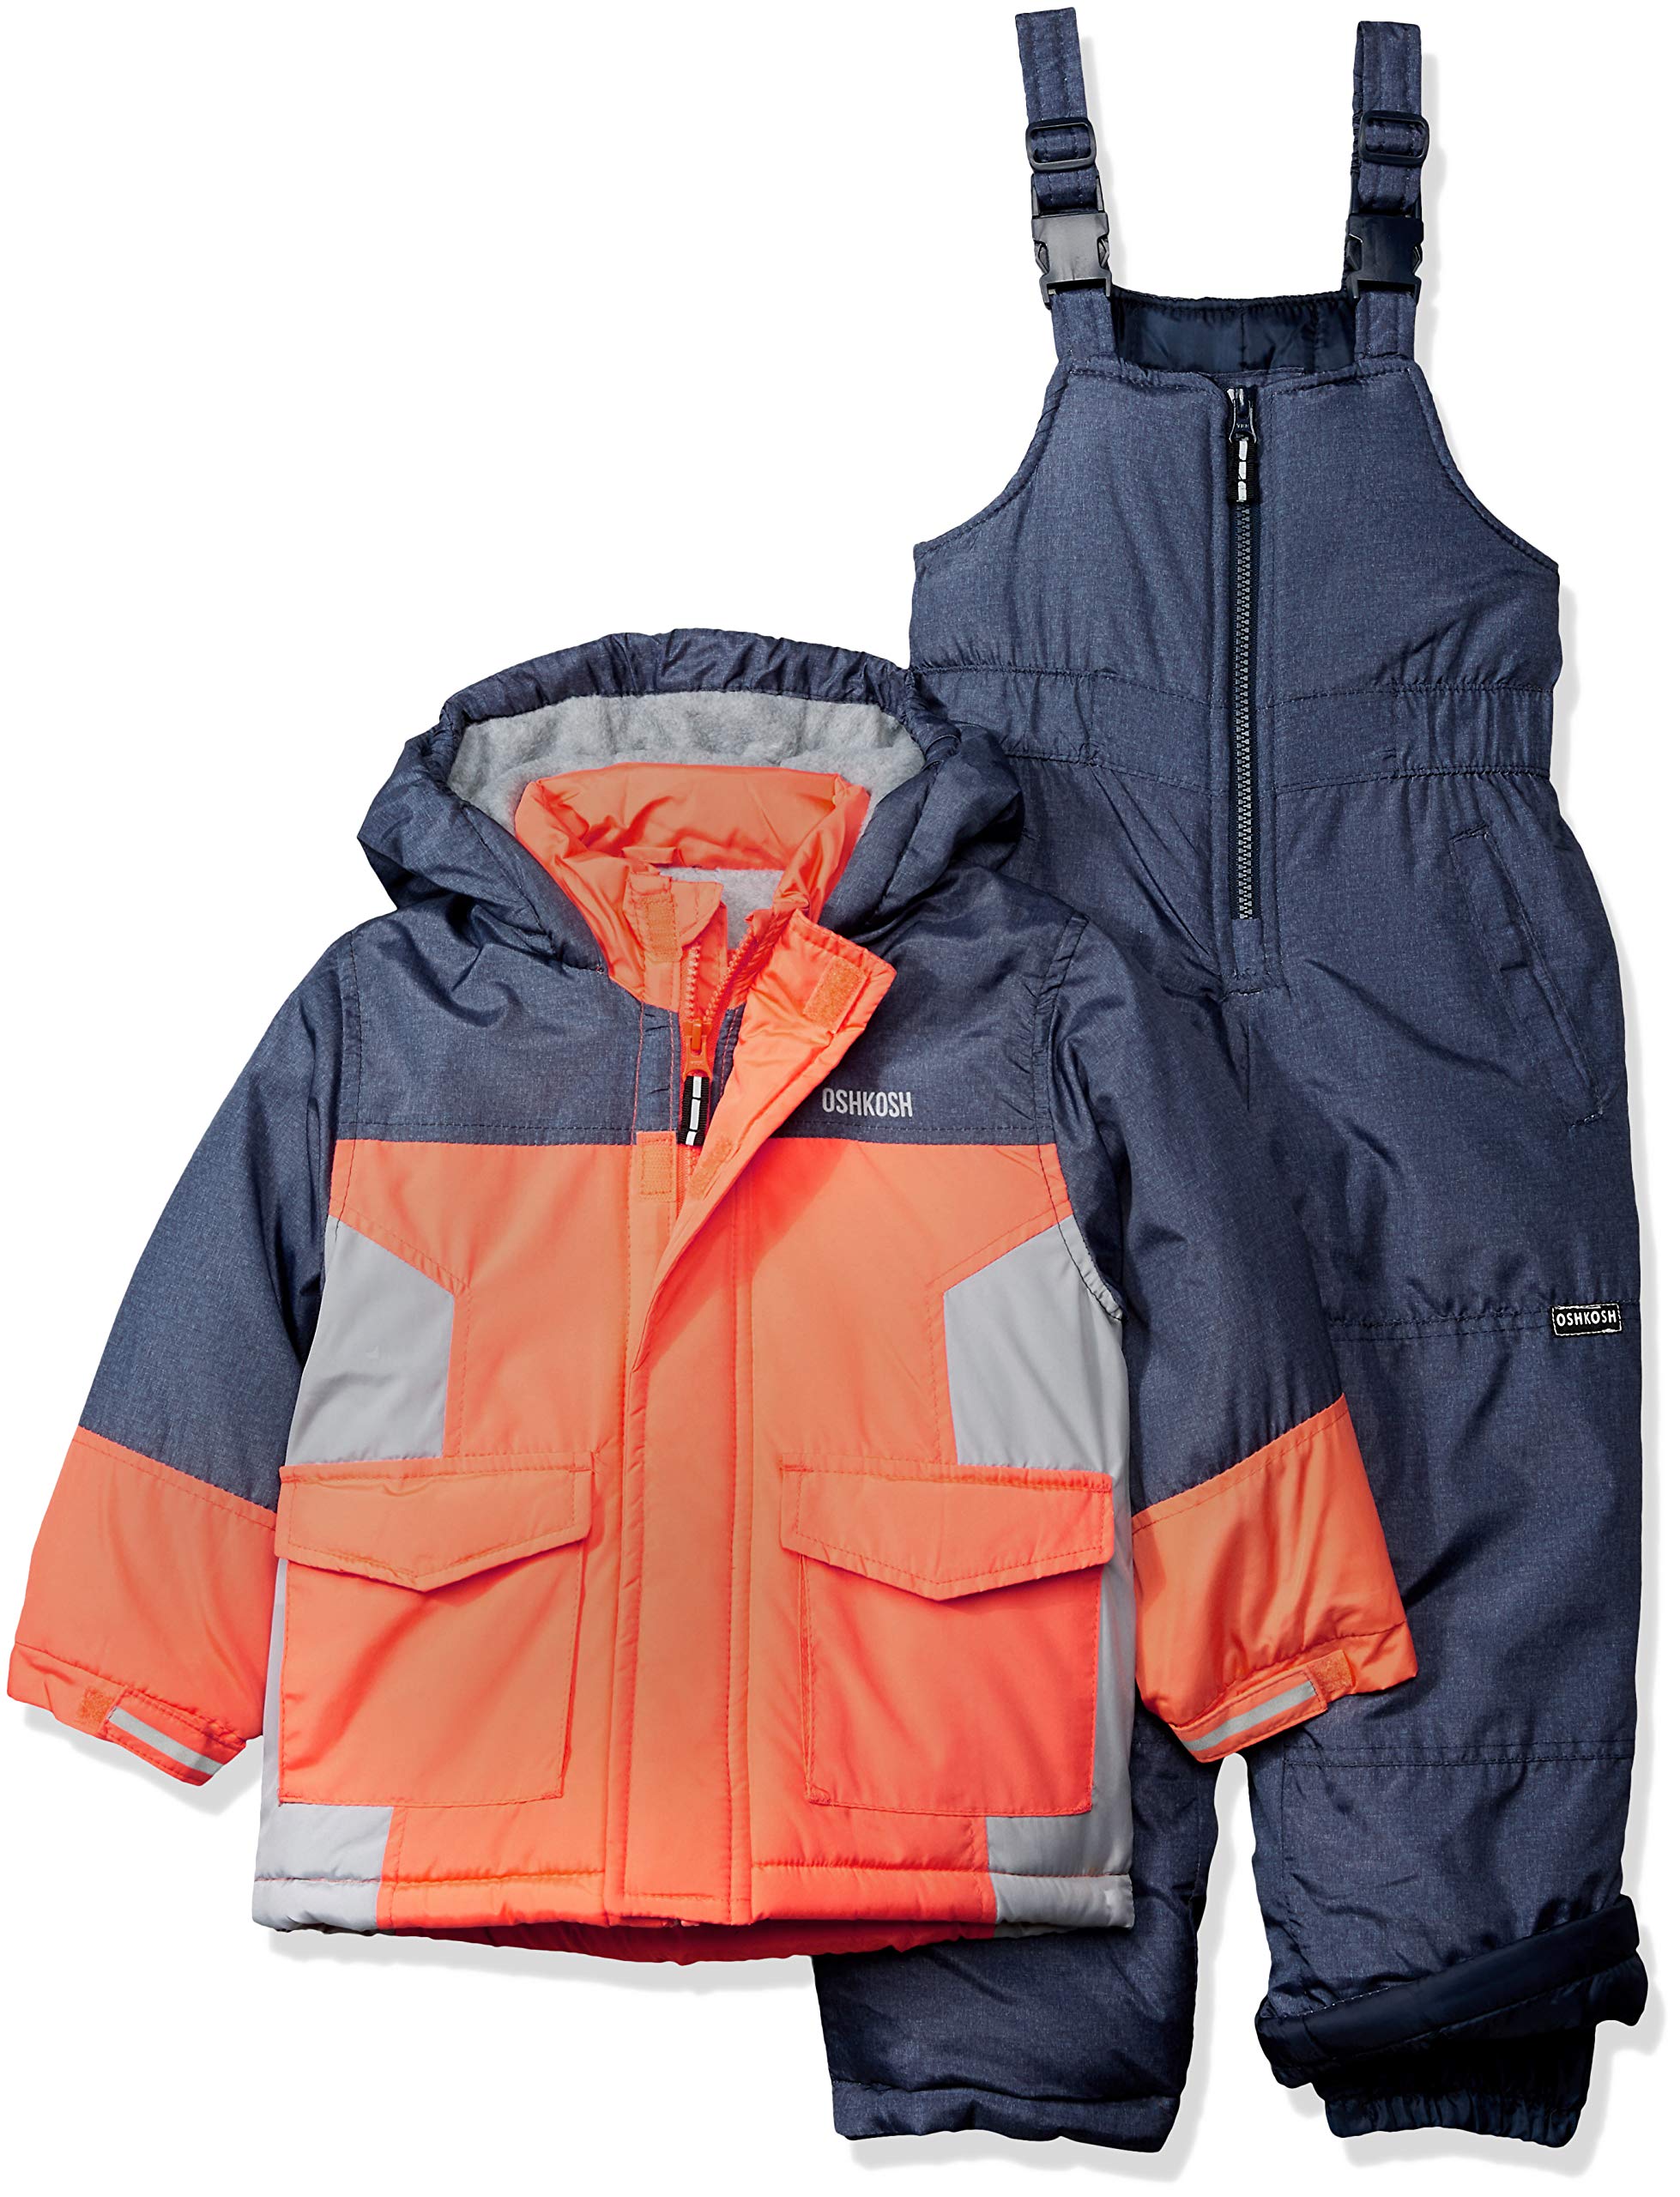 OshKosh B'Gosh Boys' Ski Jacket and Snowbib Snowsuit Set